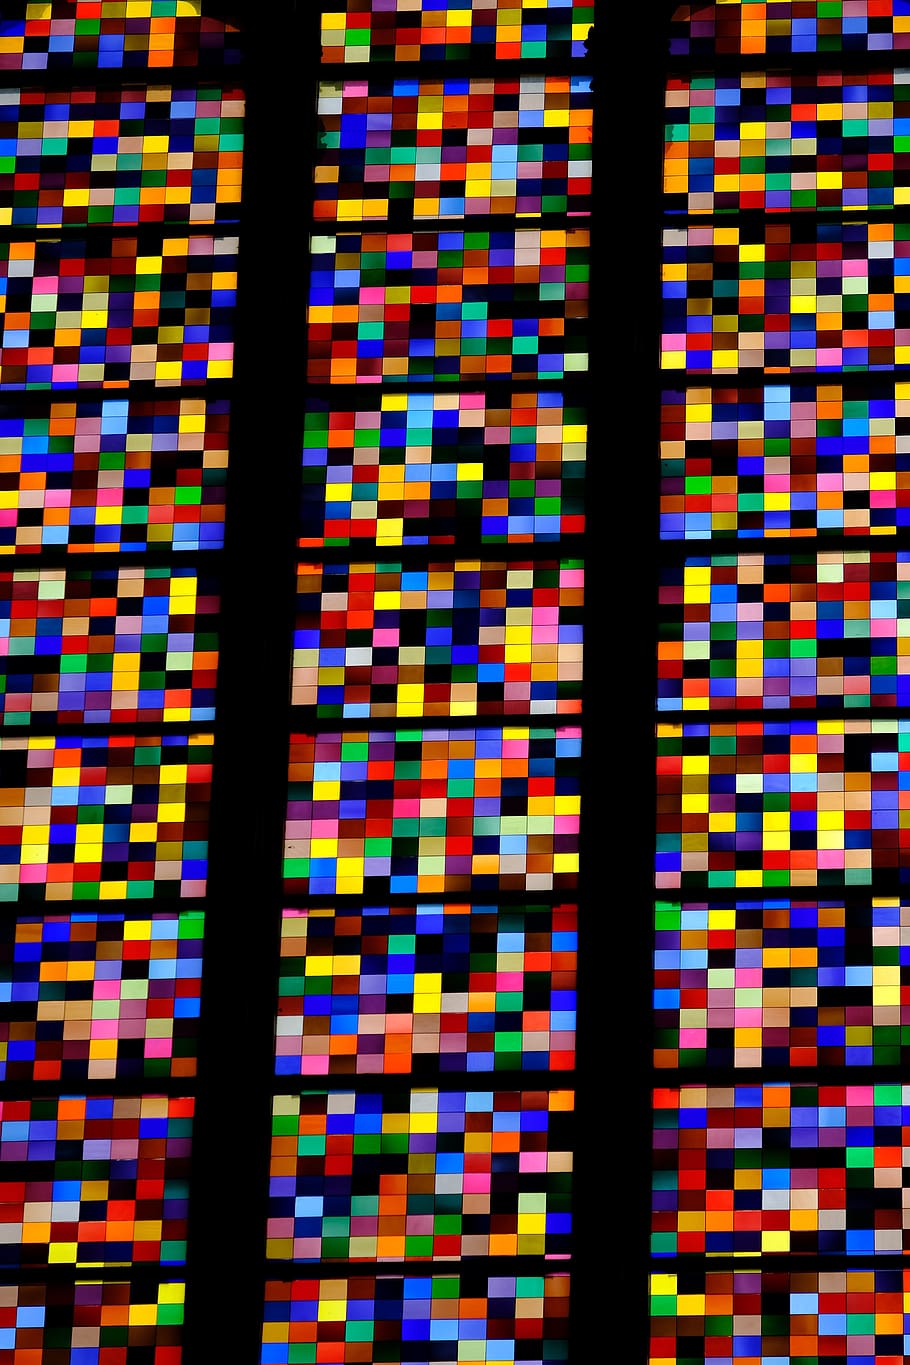 ventana de la iglesia, colorido, vidrio, catedral de colonia, multicolores, fondos, patrón, fotograma completo, sin gente, interiores